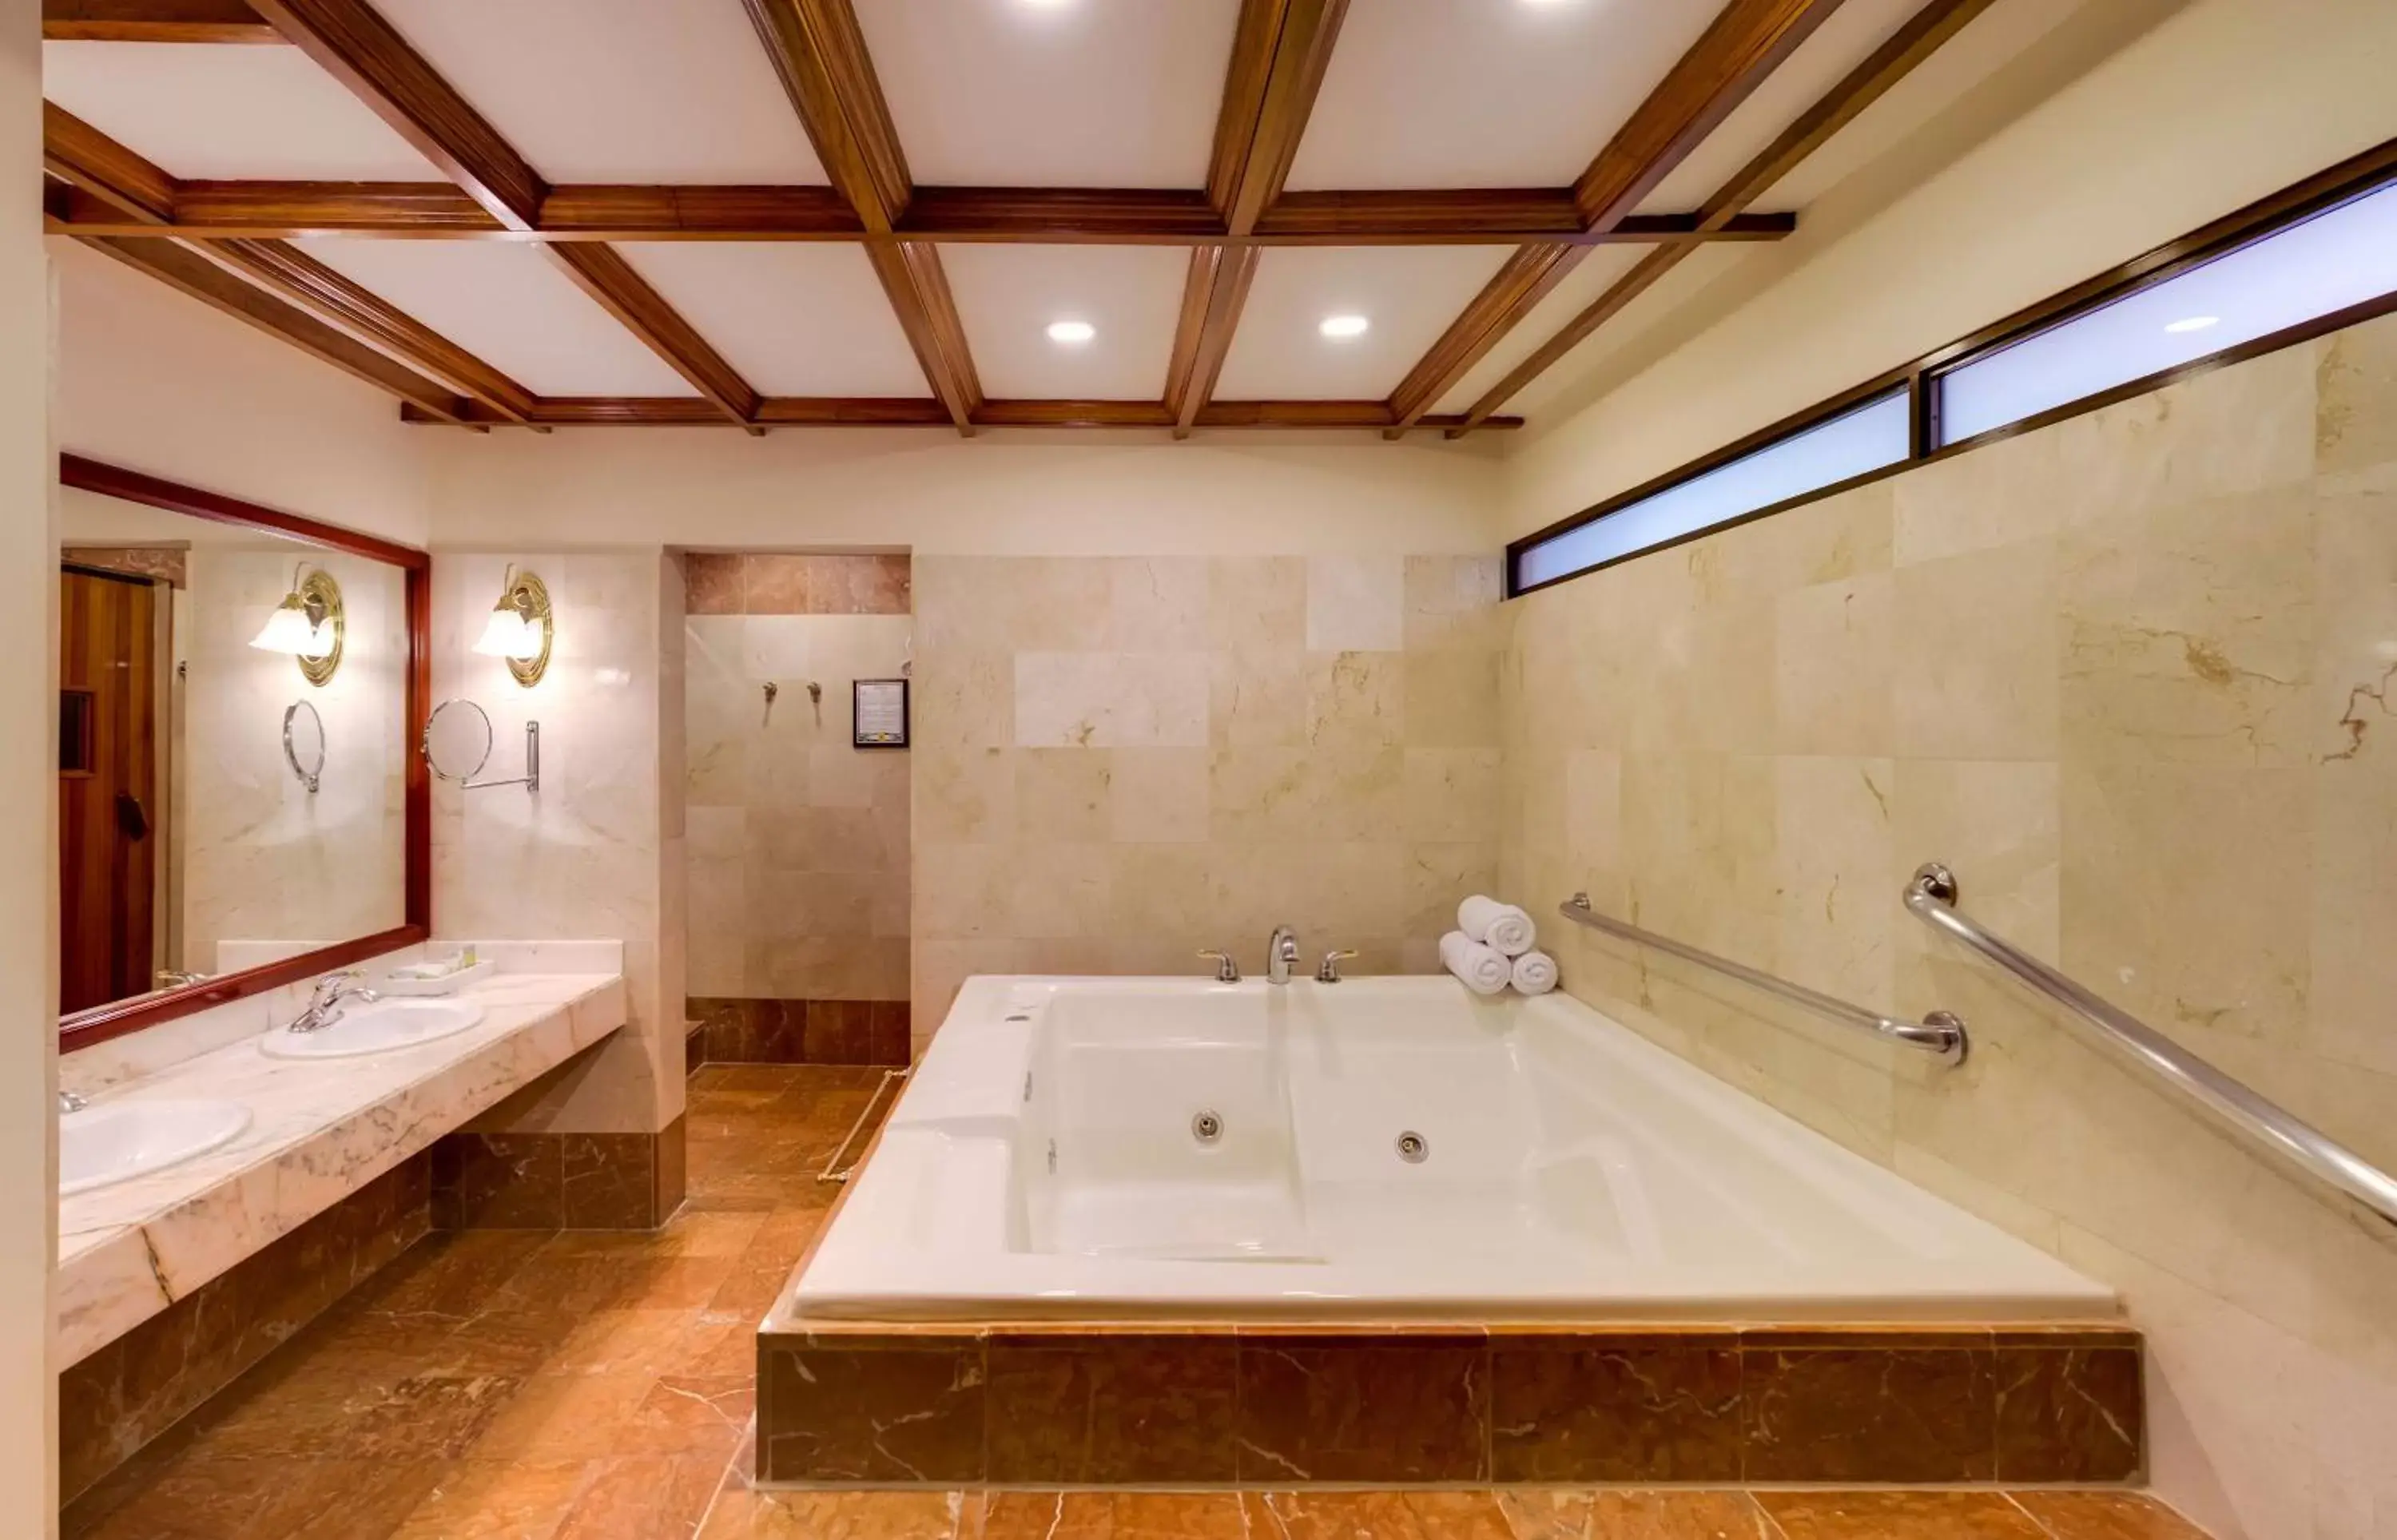 Bathroom in Hilton Cariari DoubleTree San Jose - Costa Rica